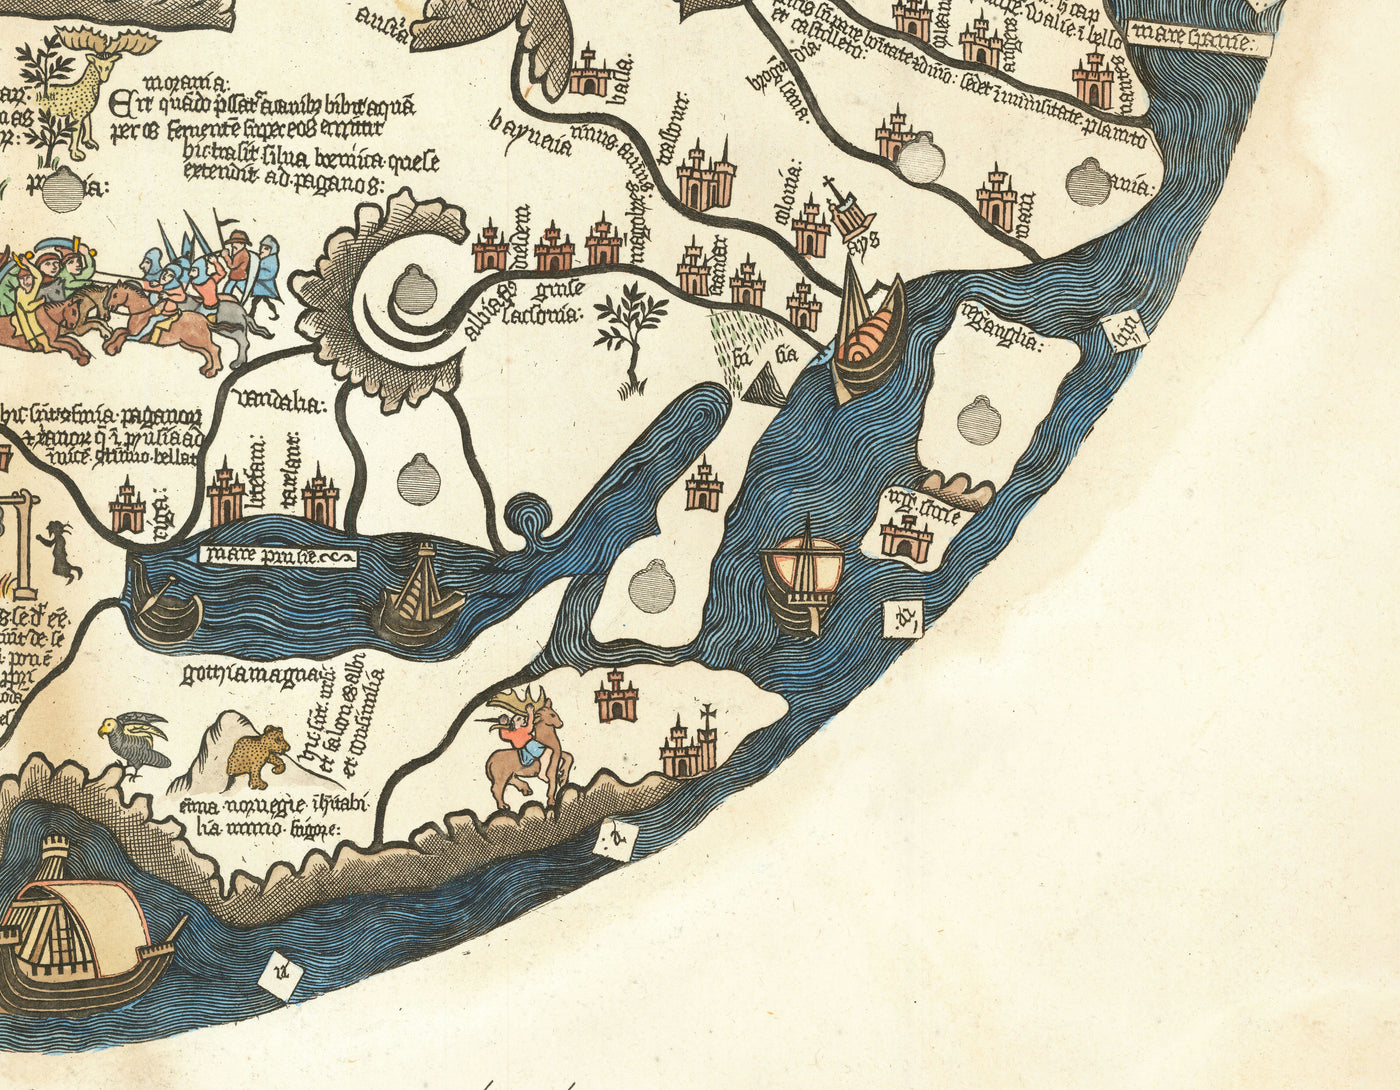 Ancien Borgia Mappa Mundi, 1450 - Atlas du monde antique - Europe, Moyen-Orient, Afrique du Nord, Méditerranée